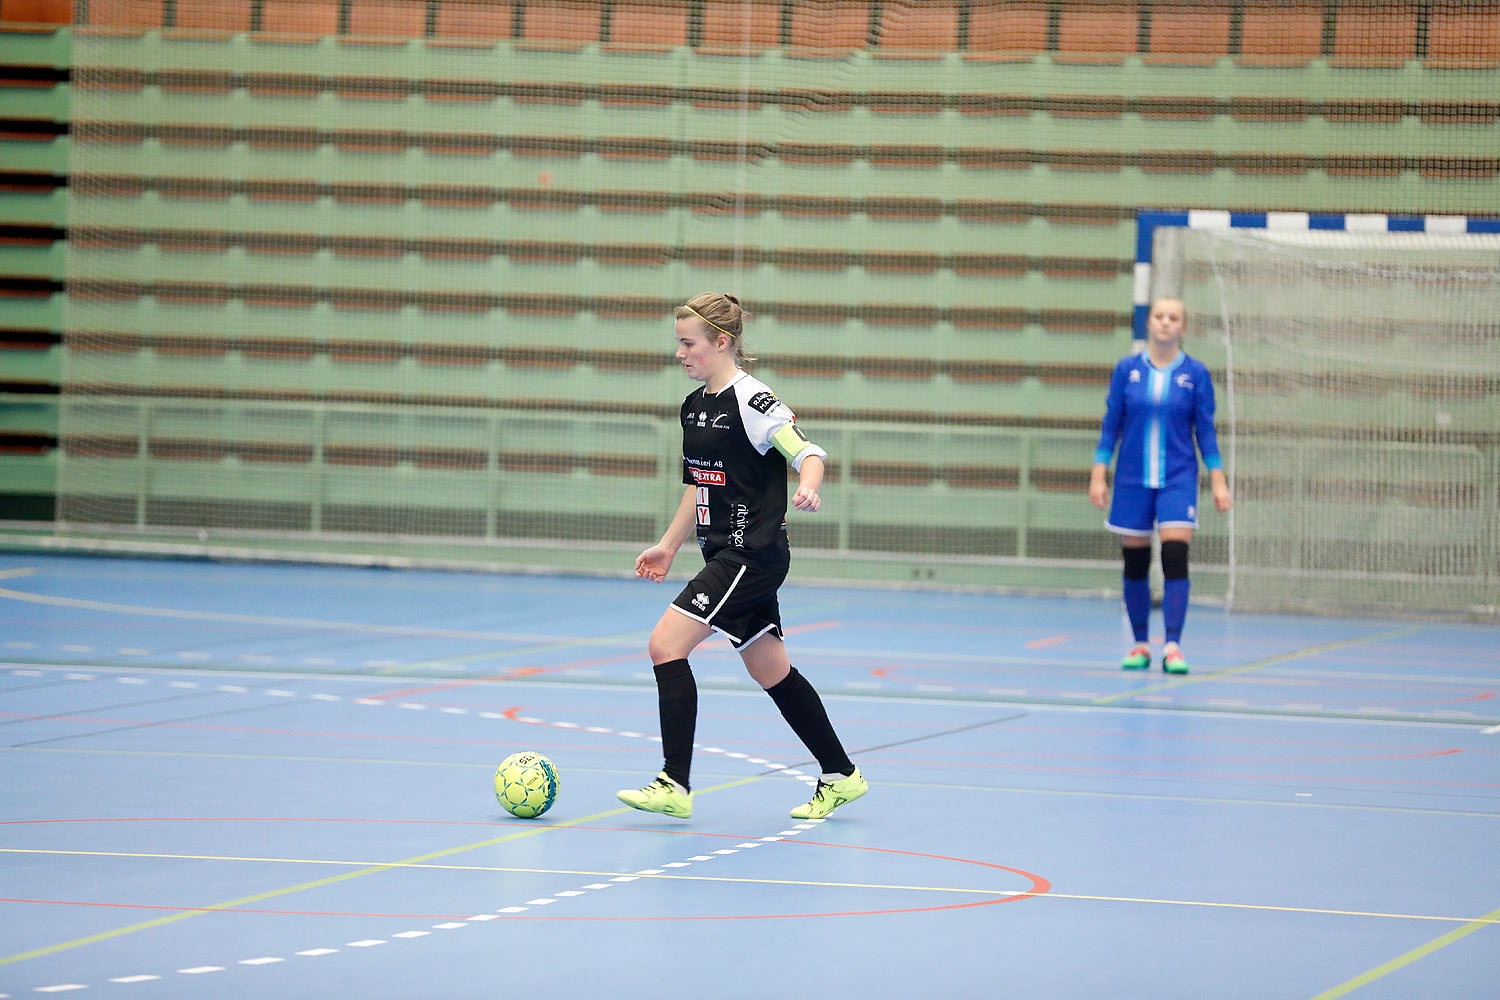 Skövde Futsalcup Damer Hertzöga BK 1-Skövde KIK,dam,Arena Skövde,Skövde,Sverige,Skövde Futsalcup 2016,Futsal,2016,141707